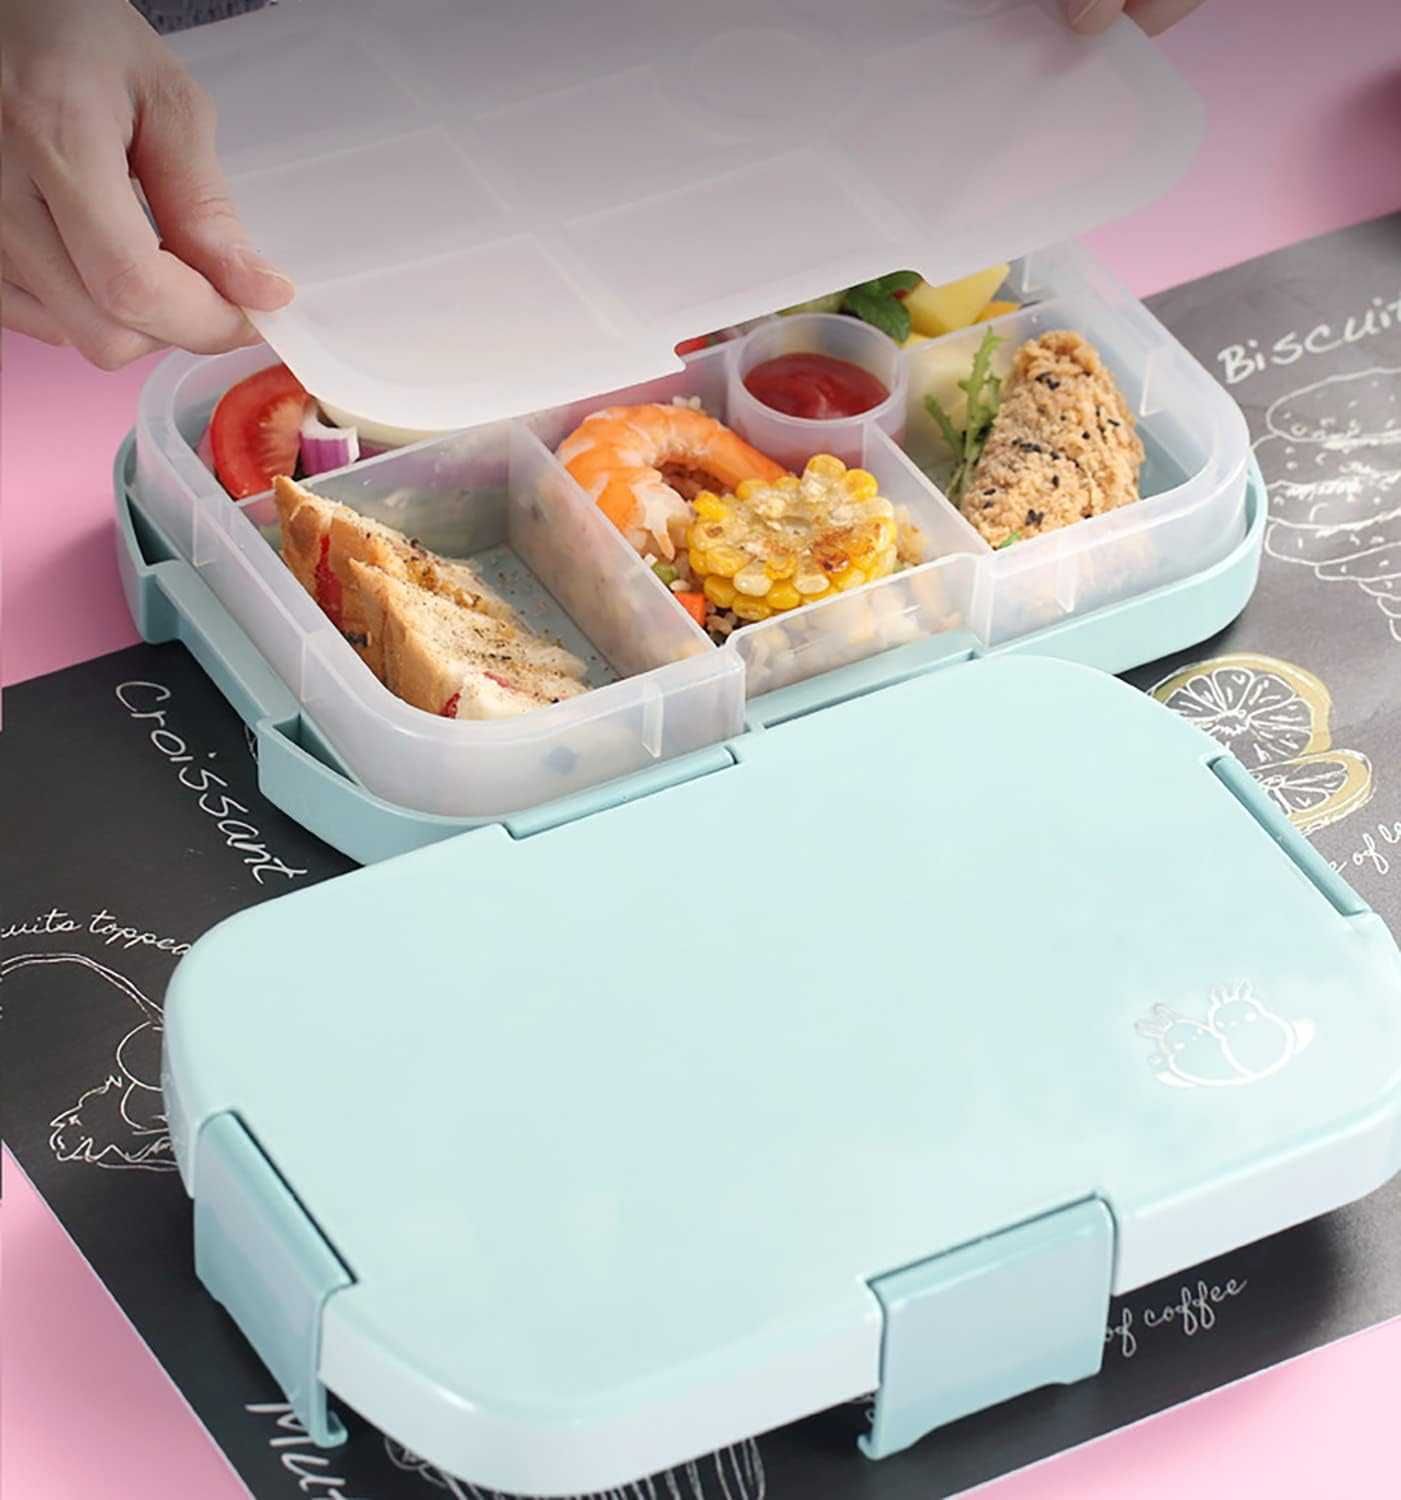 JOYZYAIYY Bento Box pudełko śniadaniowe dla dzieci z przegródkami-369